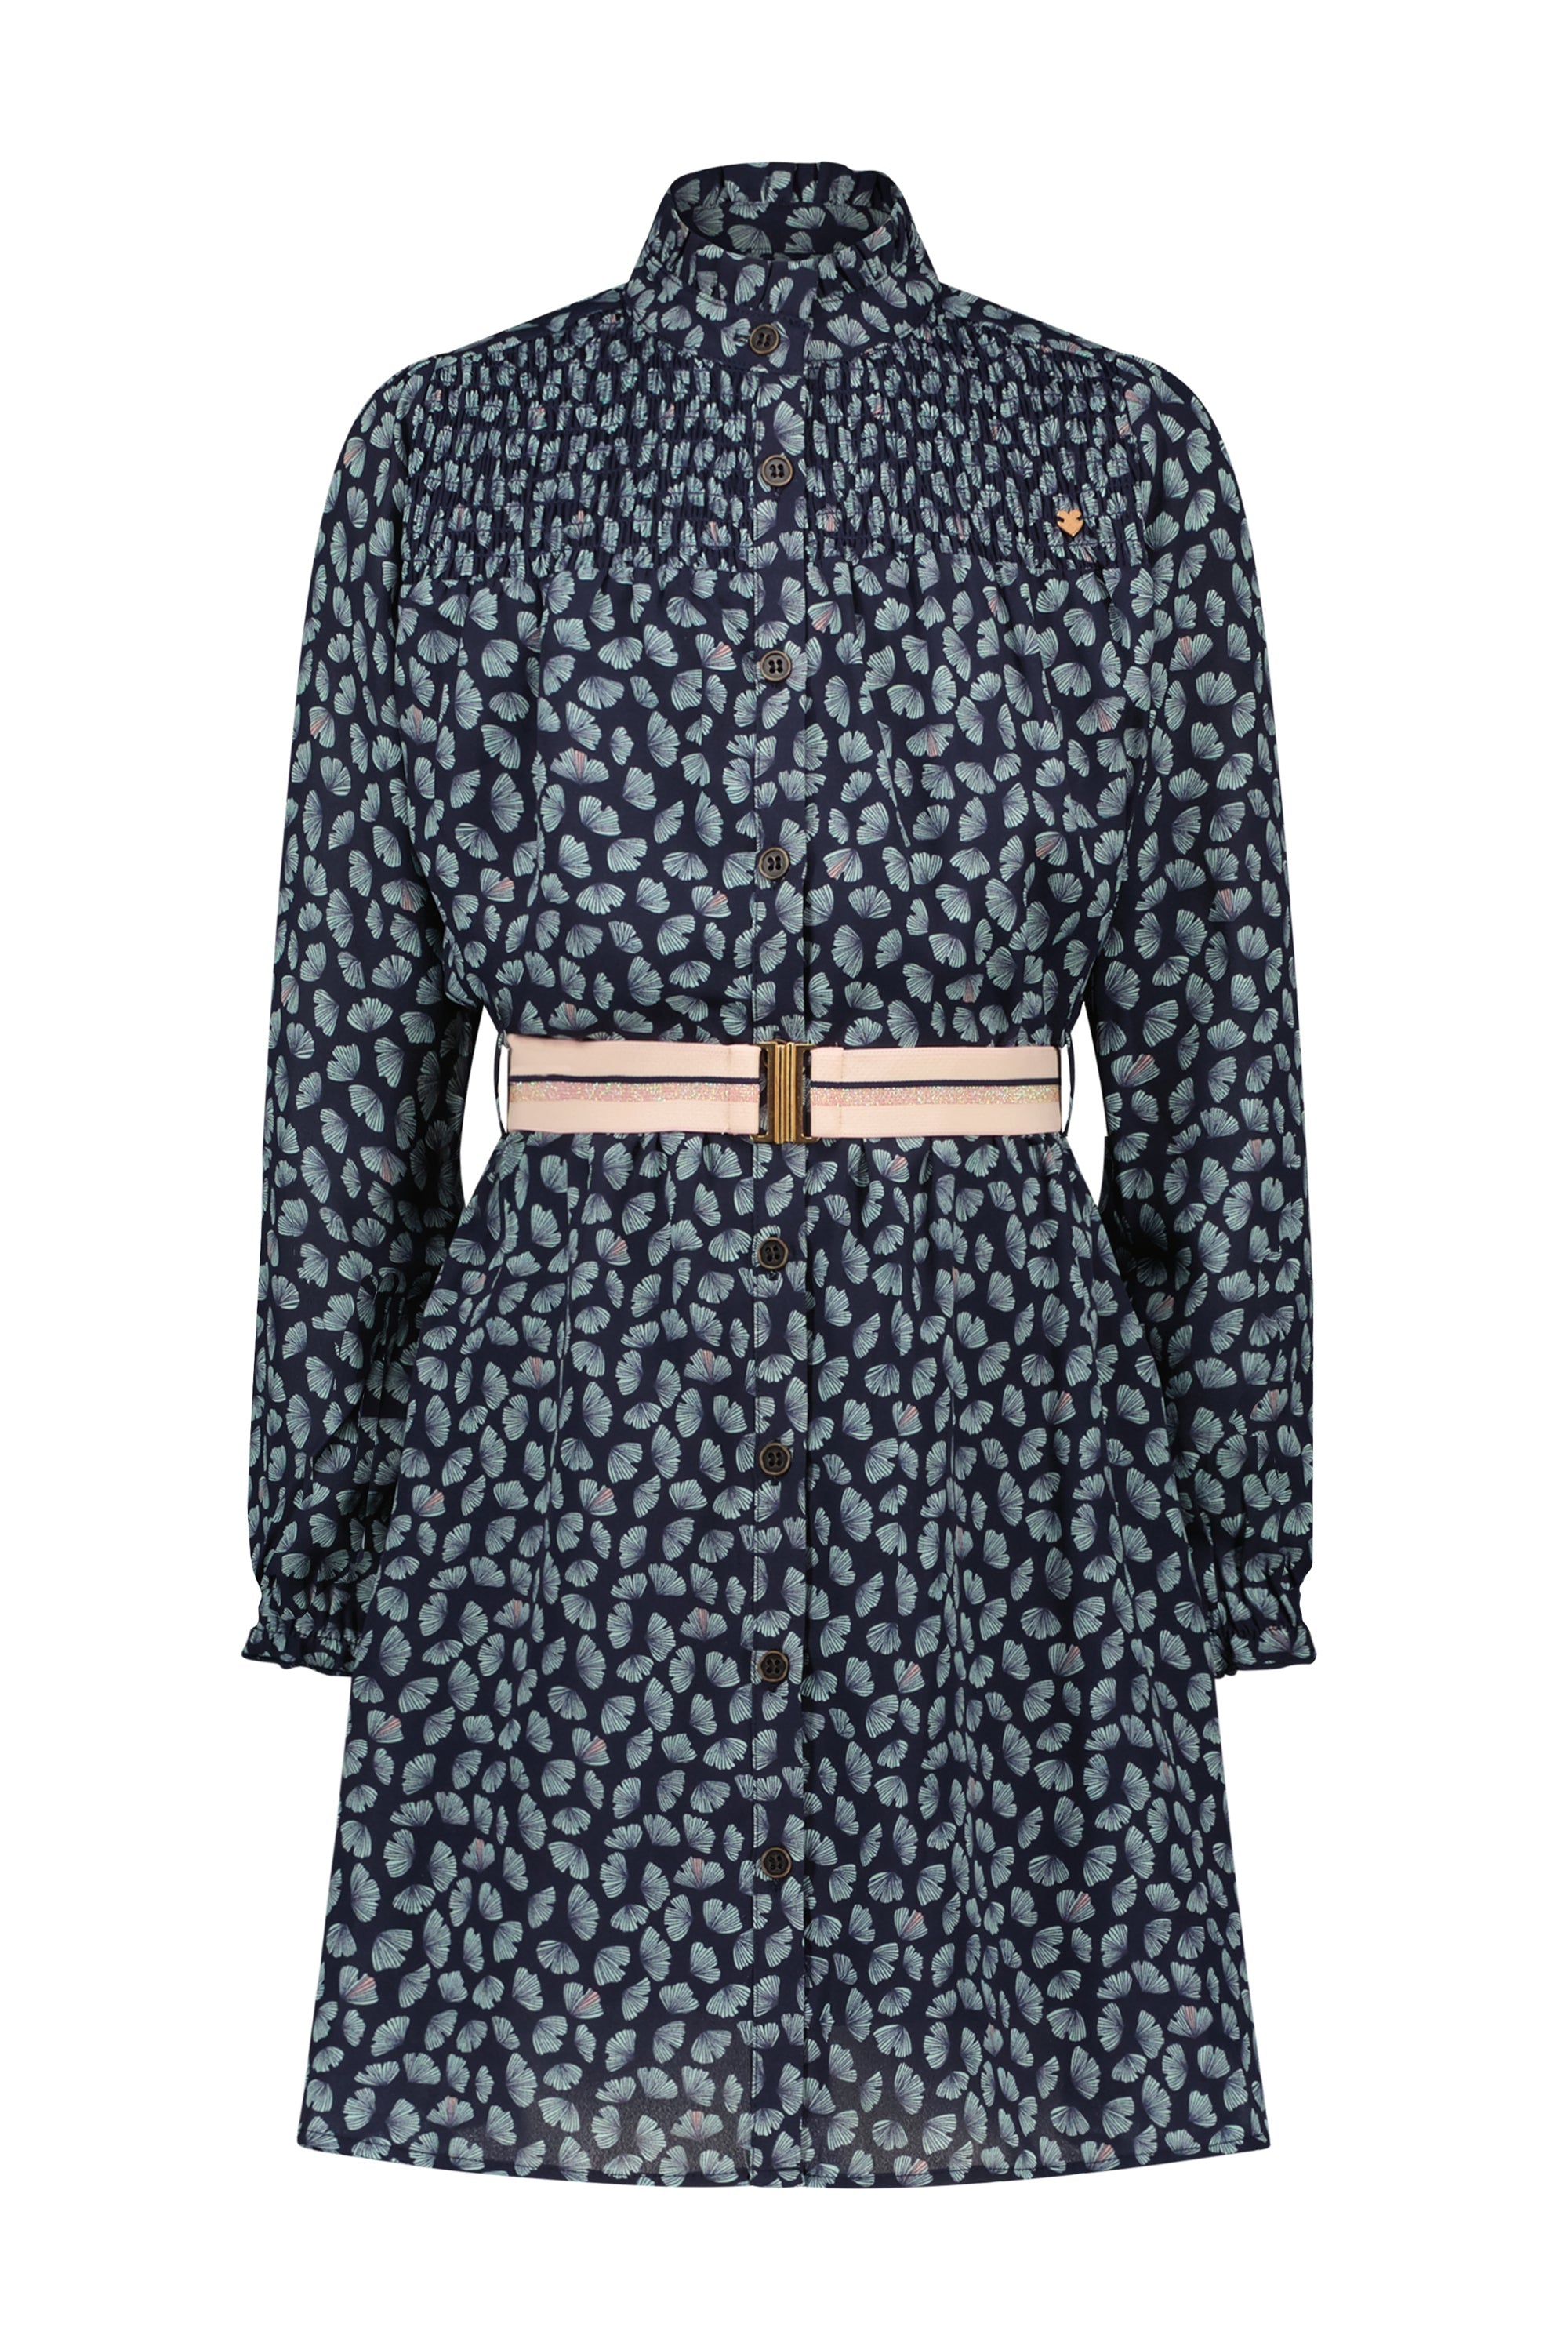 Meisjes Milau button up dress with smock details+elasticated belt van NoNo in de kleur Navy Blazer in maat 134-140.